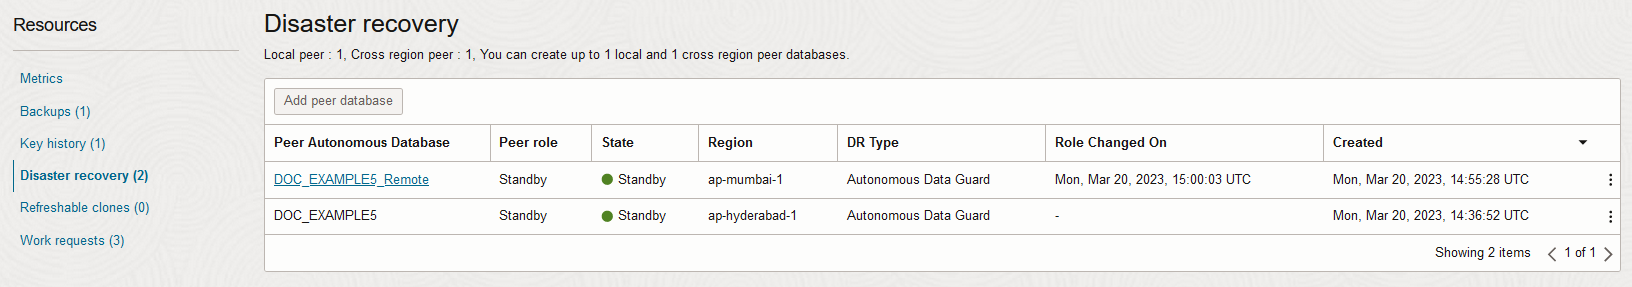 A continuación se muestra la descripción de adb_data_guard_resources.png